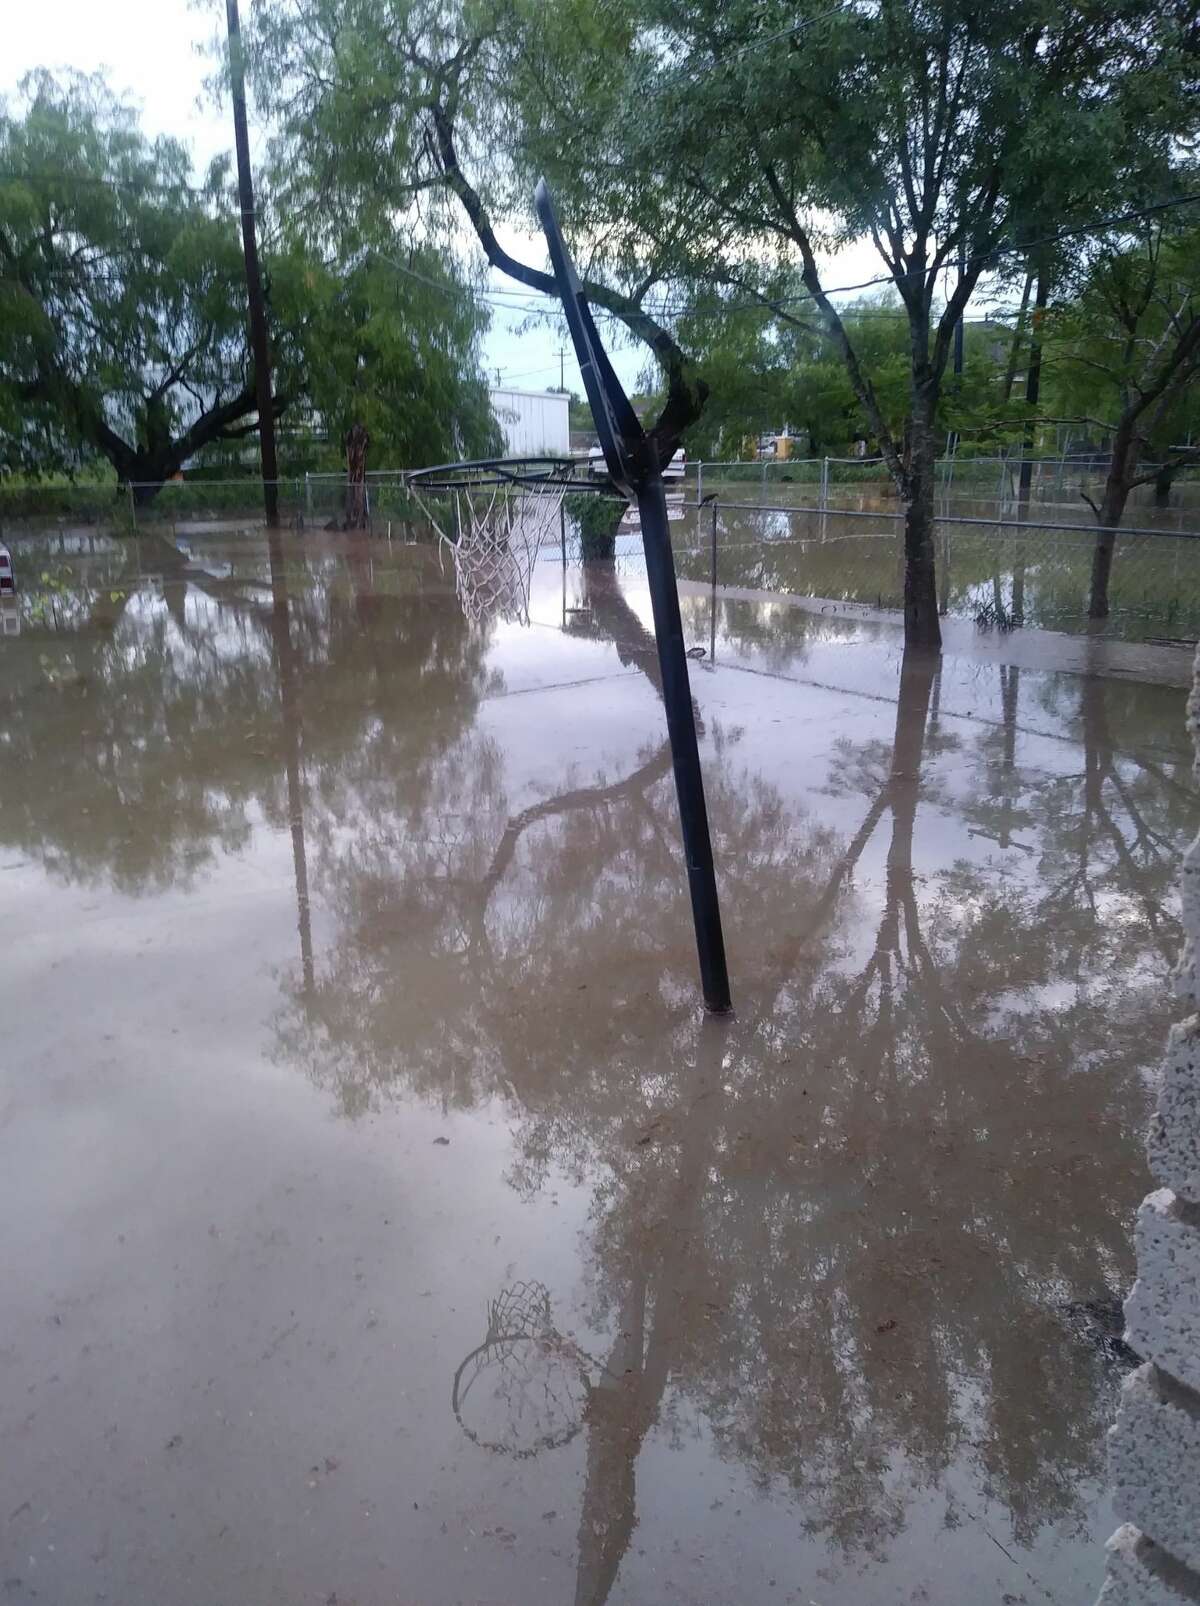 Photos show severity of flooding in Rio Grande Valley